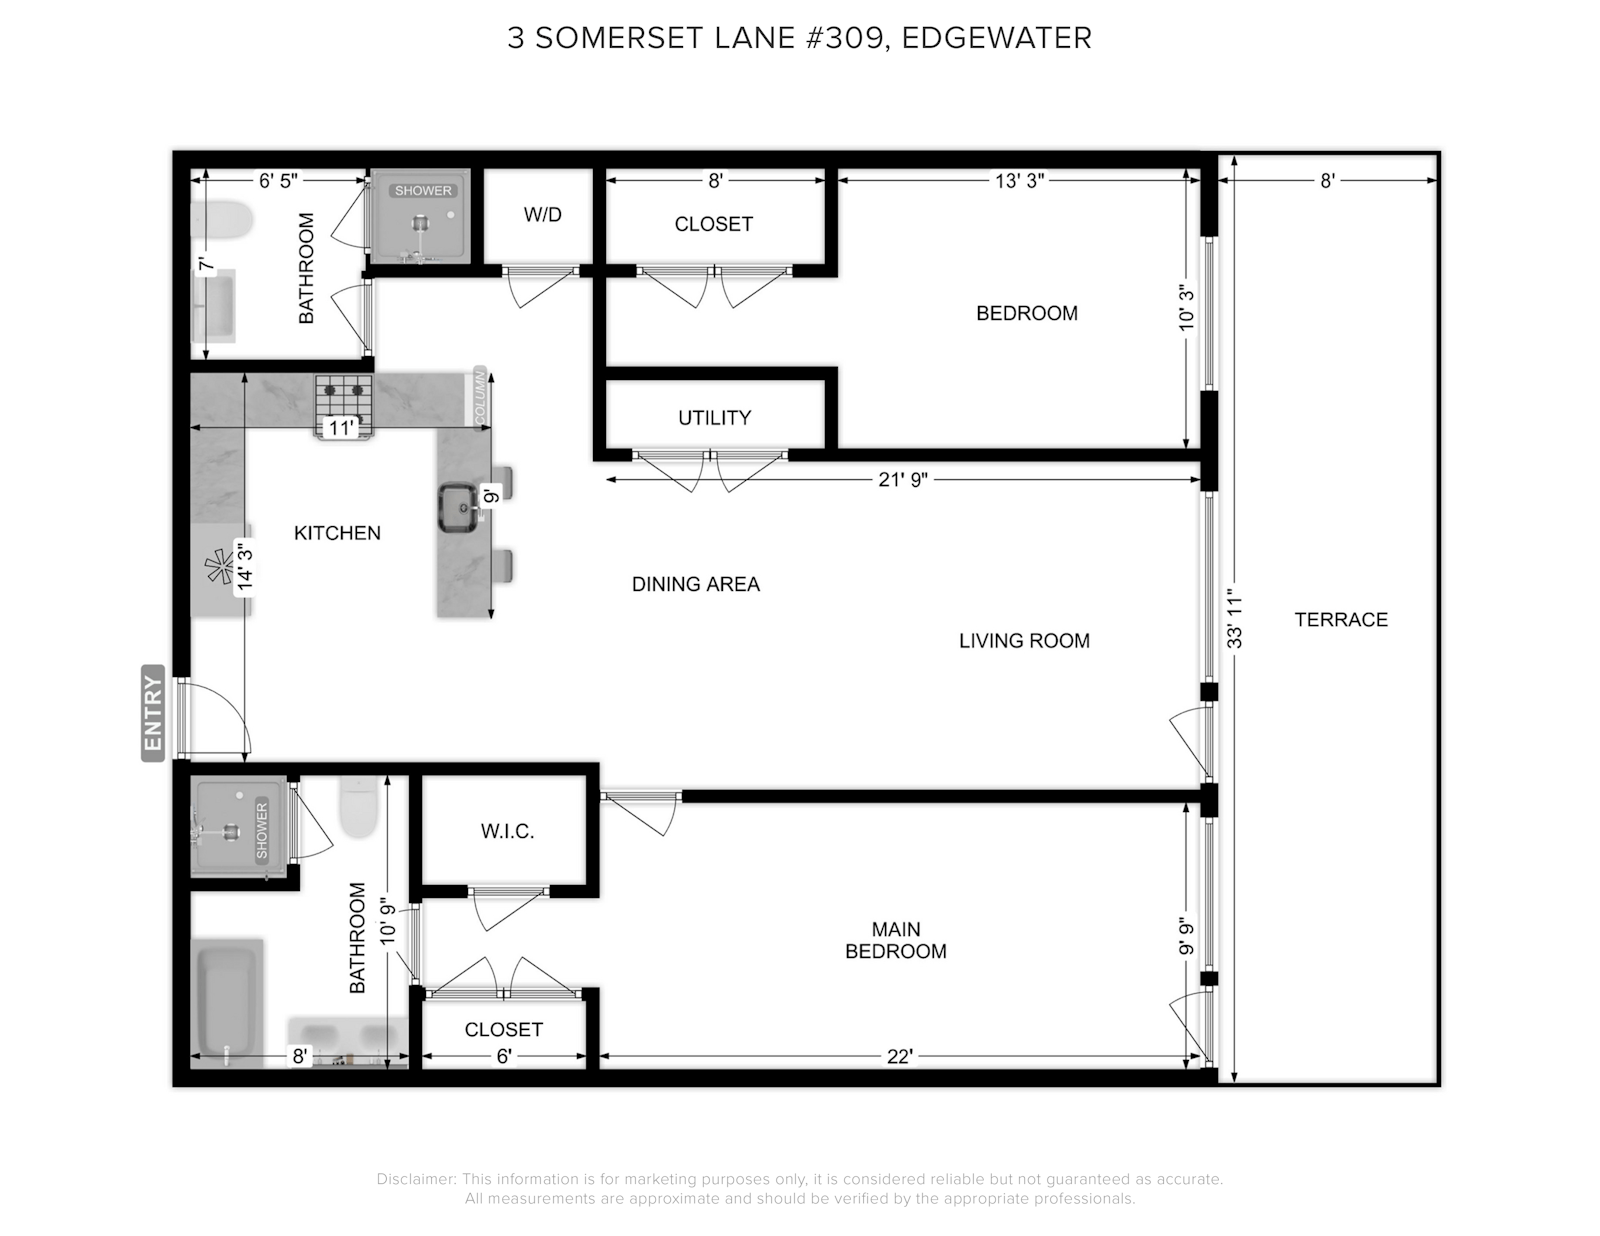 Floorplan for 3 Somerset Lane, 309